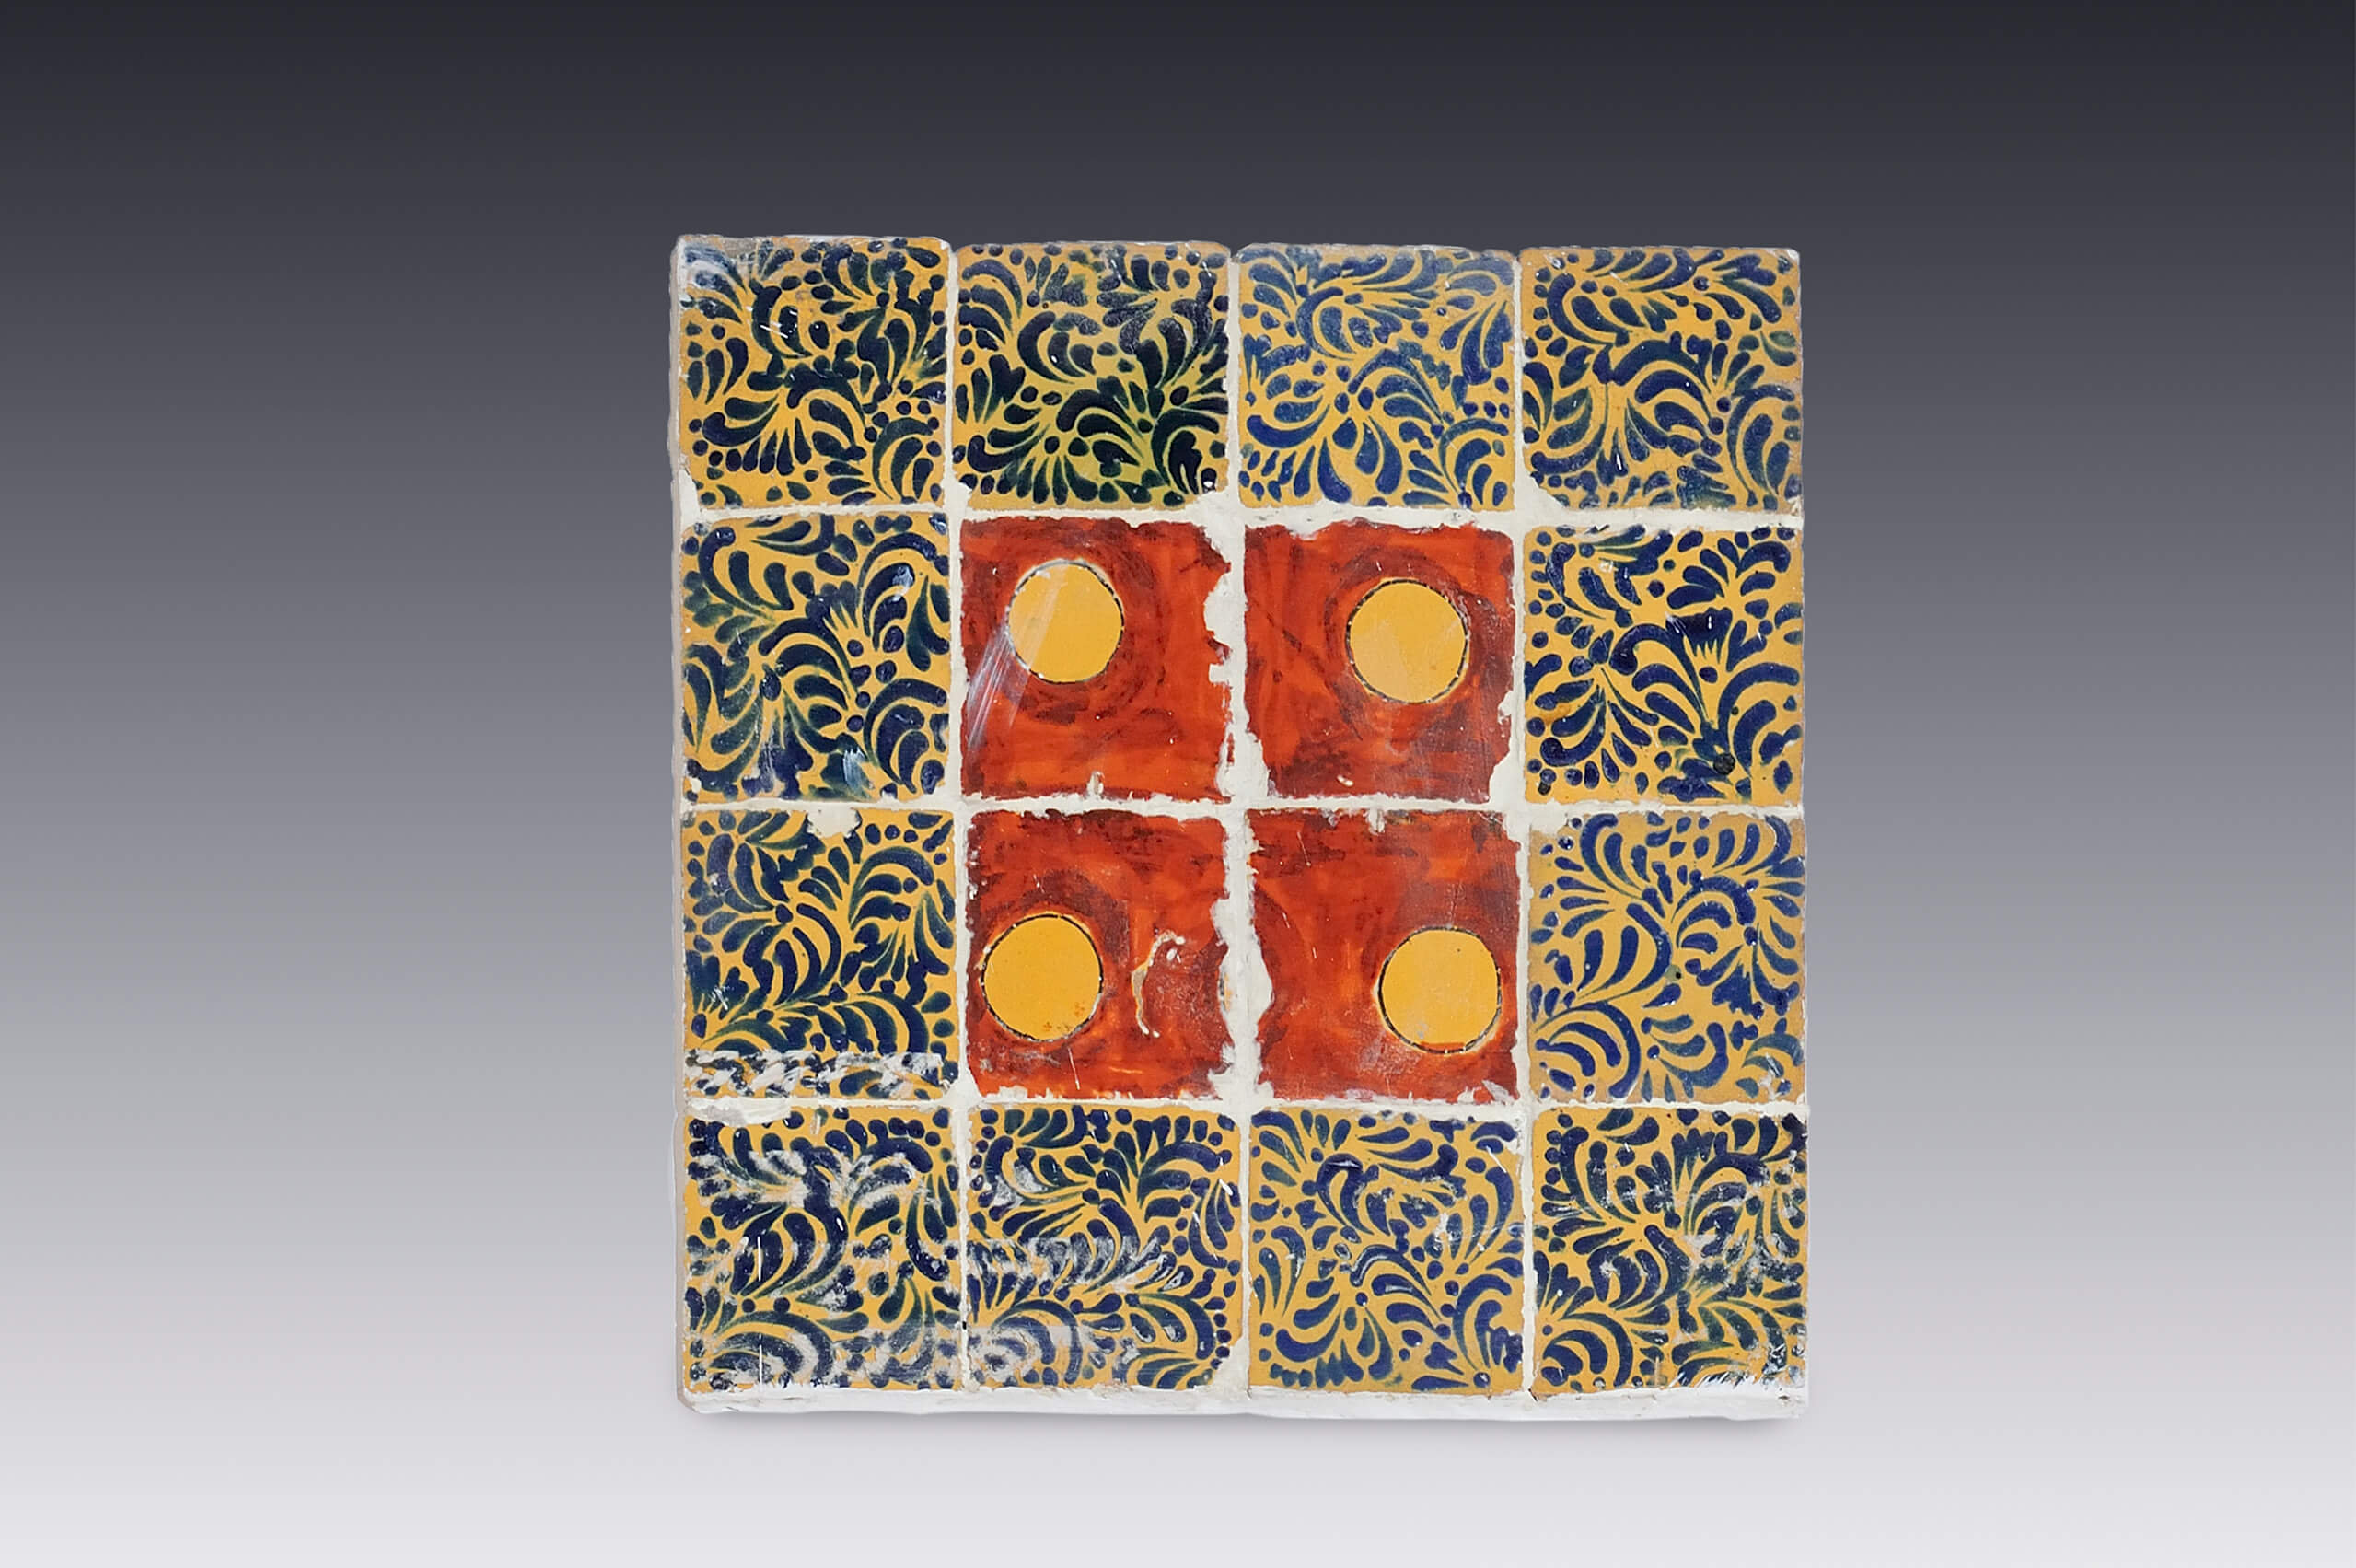 Panel de azulejos con motivos geométricos | Salas de Arte Virreinal y Siglo XIX | Museo Amparo, Puebla